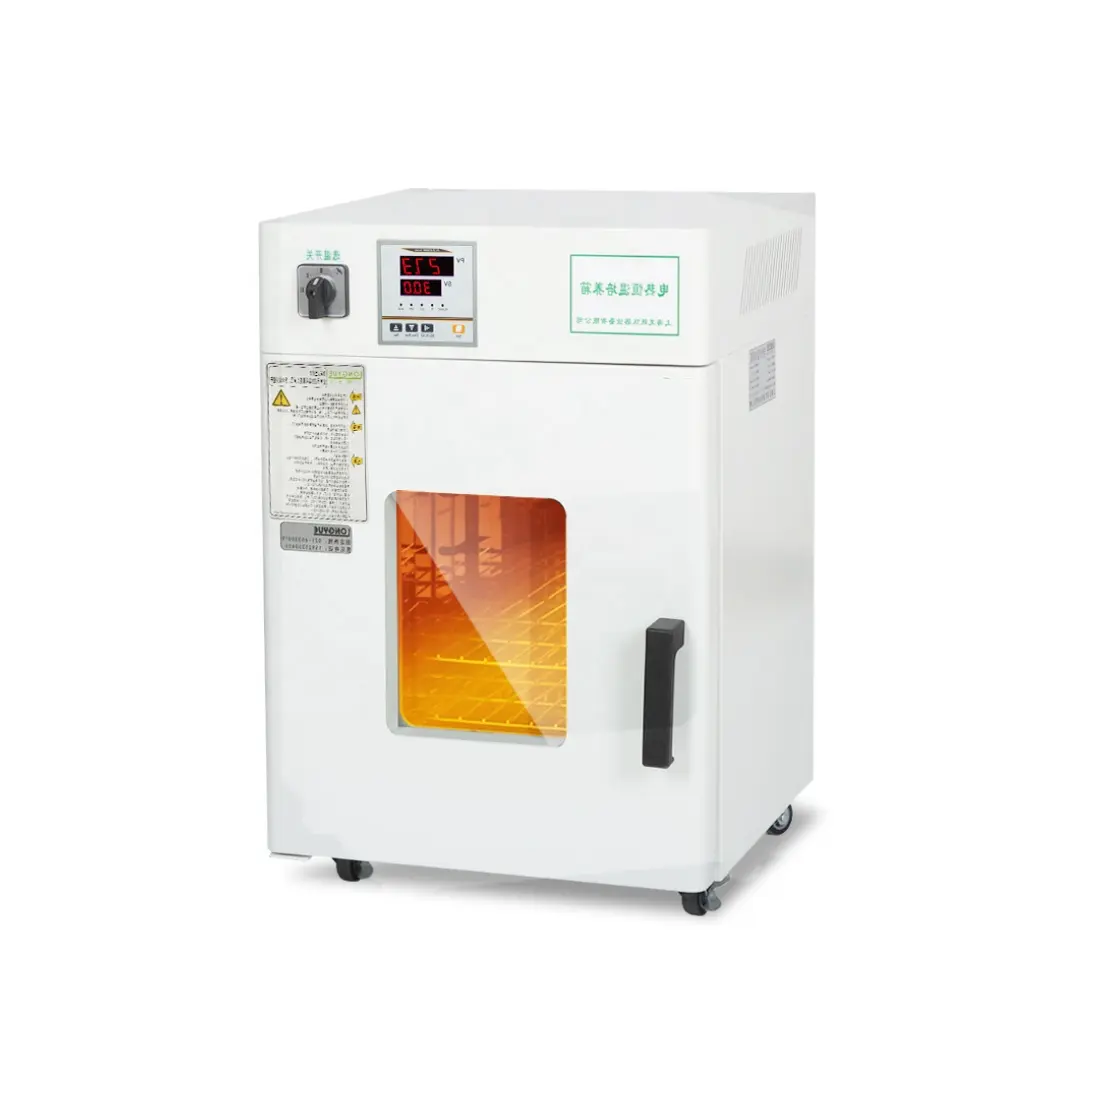 WEIAI Labor Inkubator 30L Vertikale mikrobielle Bakterien Inkubator Maschine Trocknen Ofen LI-9052